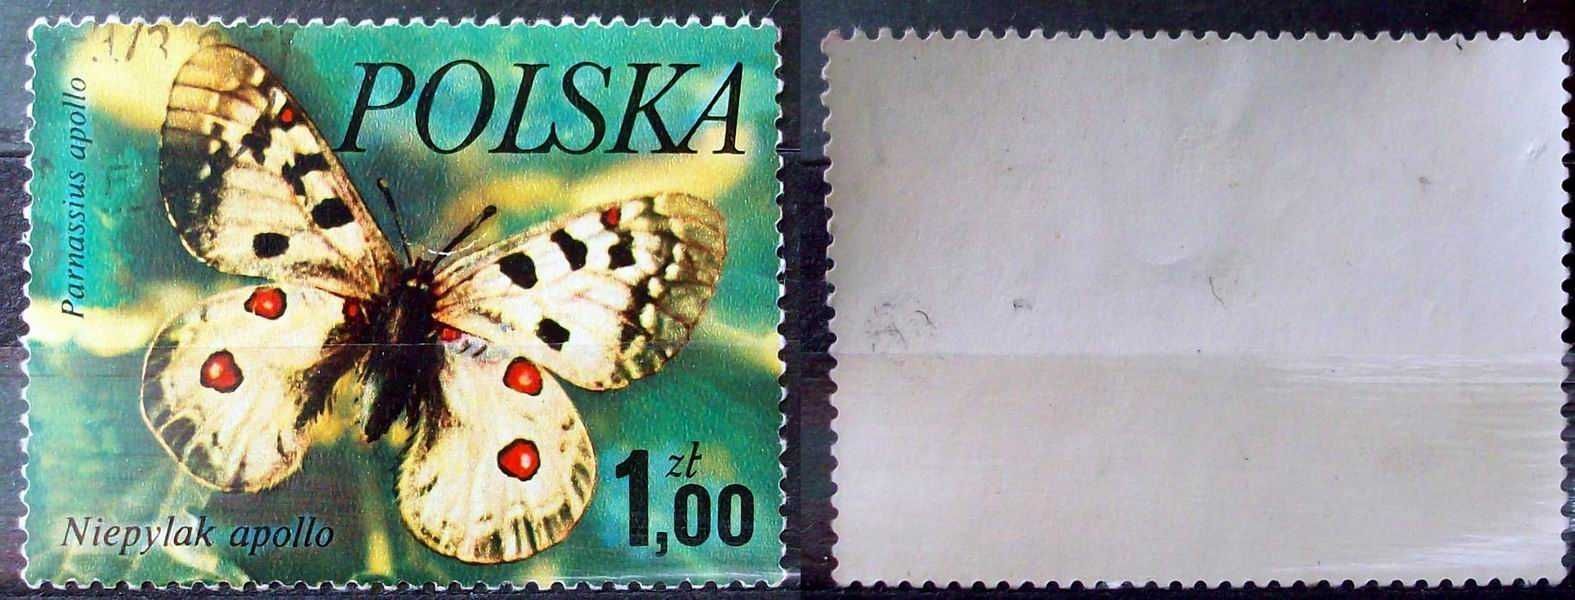 L Znaczki polskie rok 1977 kwartał III